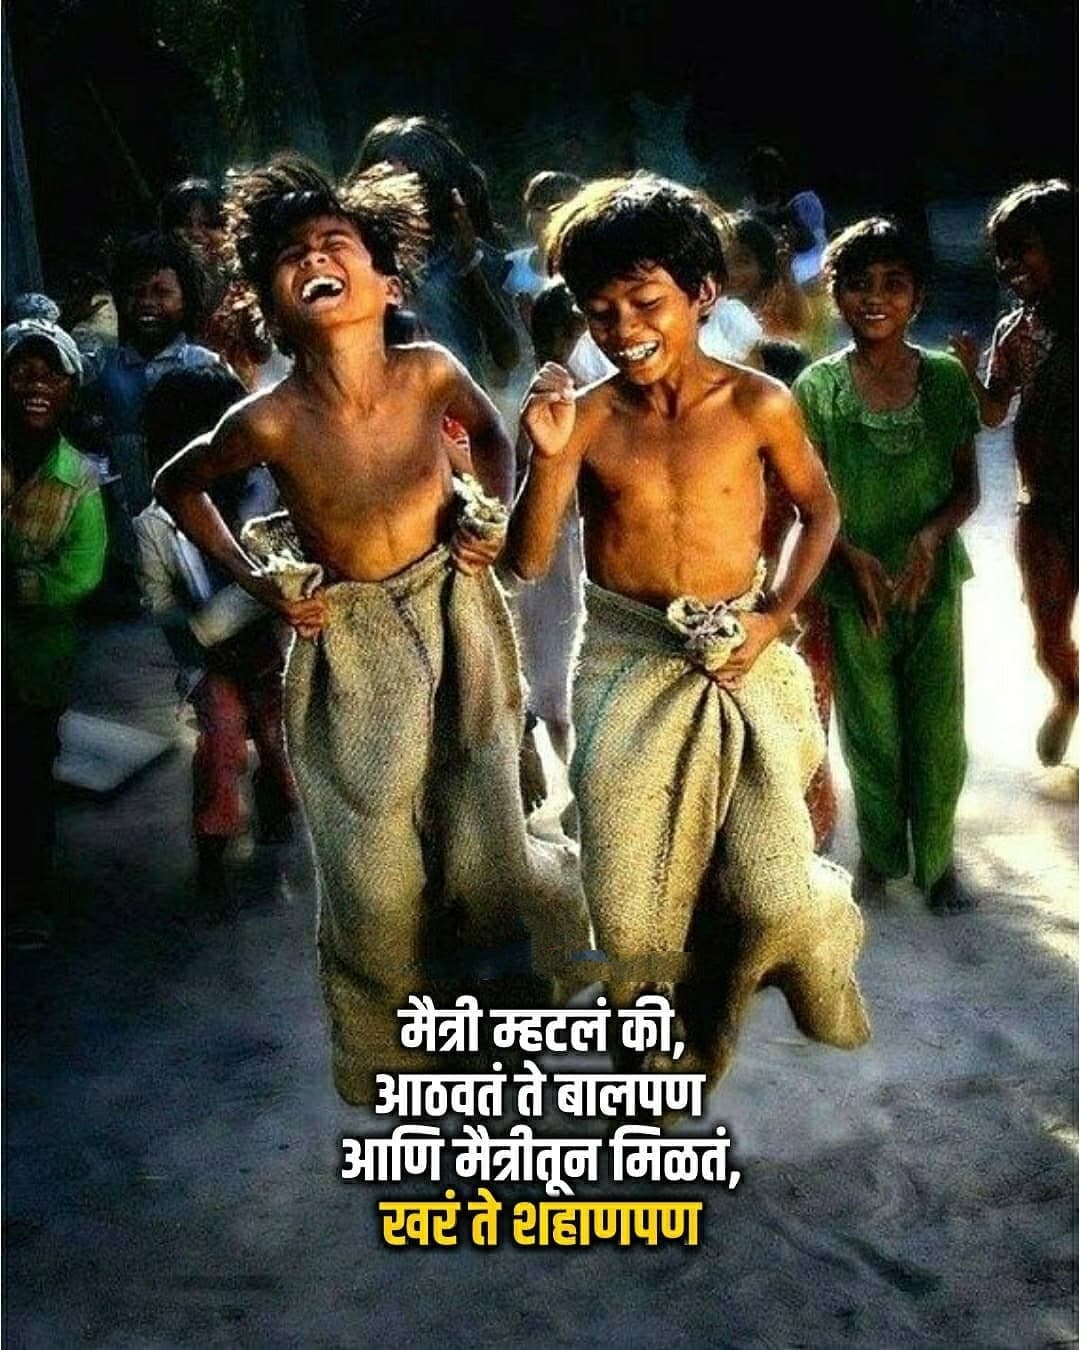 Maitri captions In Marathi